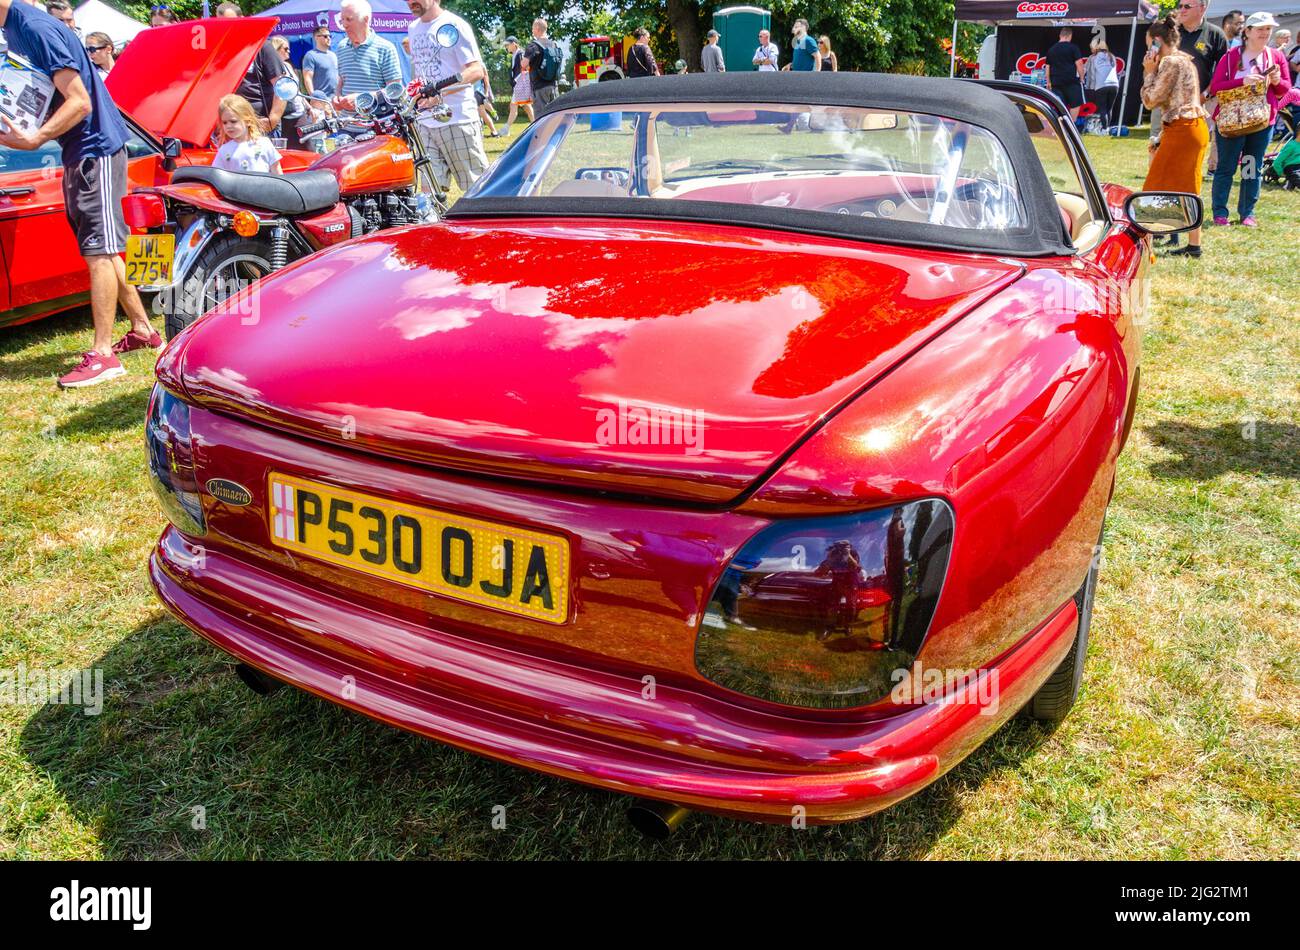 Parte trasera de una quimera TVR roja en el Berkshire Motor Show en Reading, Reino Unido Foto de stock